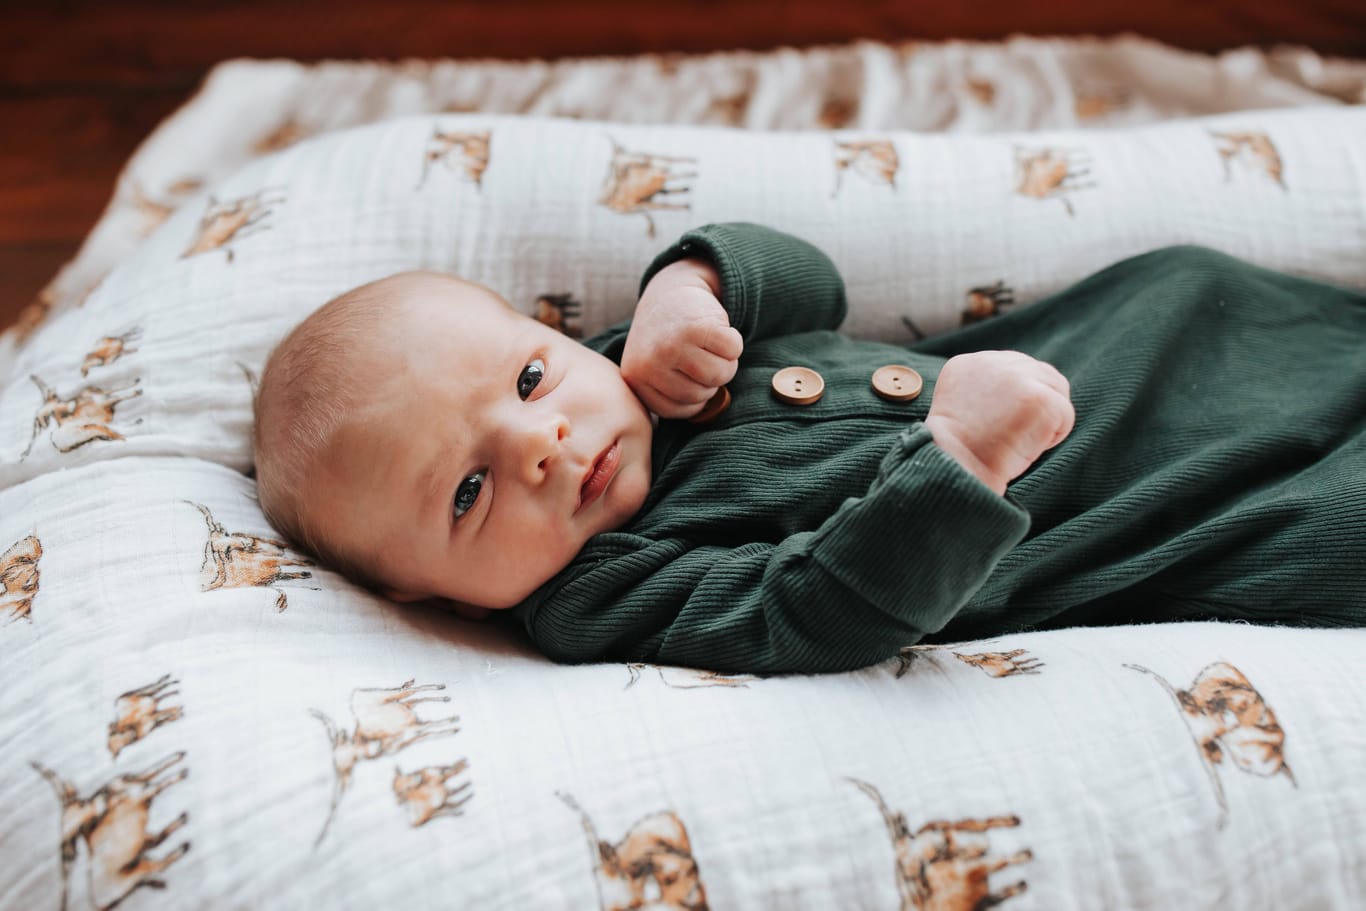 Ein Baby liegt auf einer Decke (Symbolbild): Laut dem Einwohnermelderegister werden in Berlin immer weniger Kinder geboren.